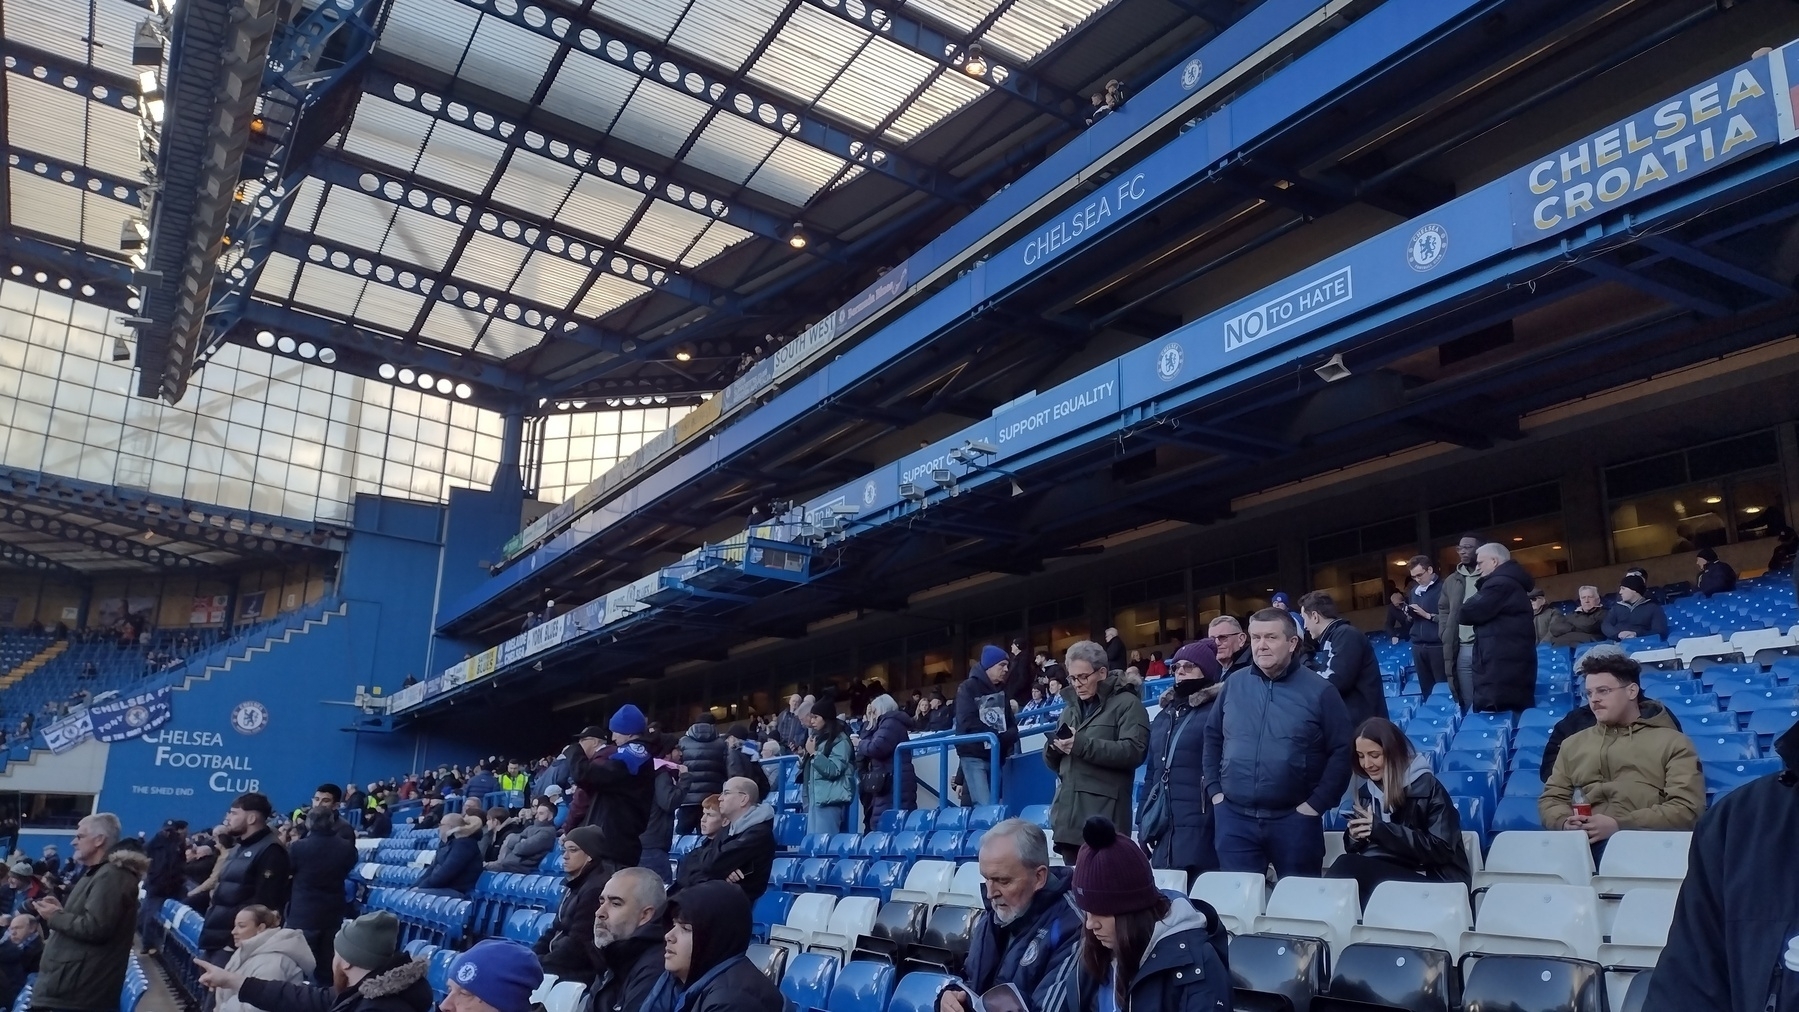 Stamford Bridge west stand